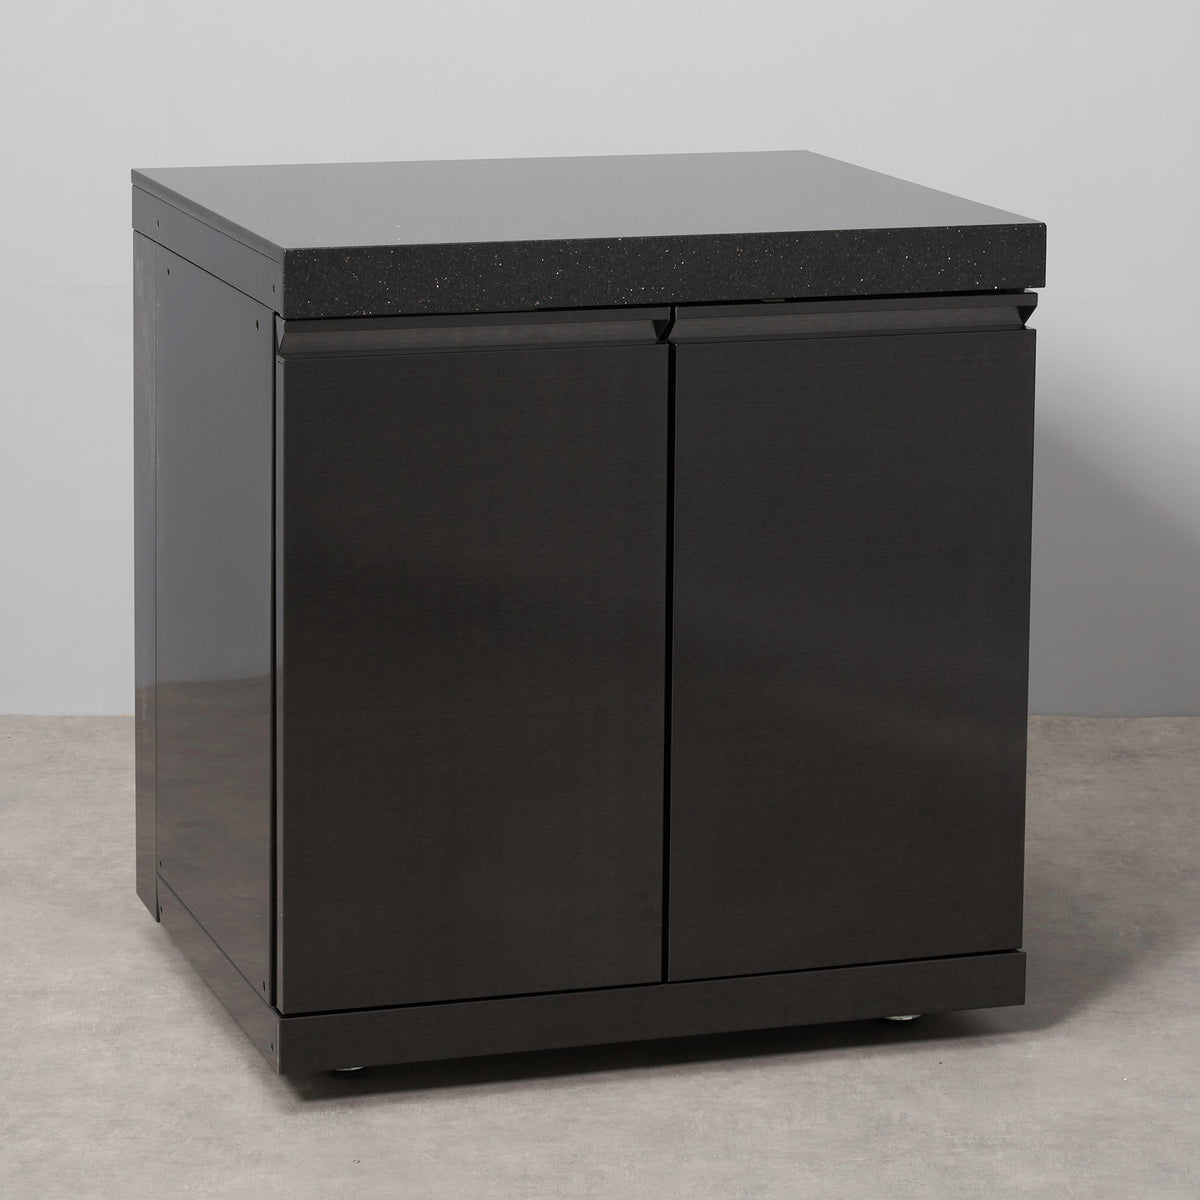 Draco Grills Outdoor Kitchen Black Stainless Steel Double Door Cabinet with Granite Top